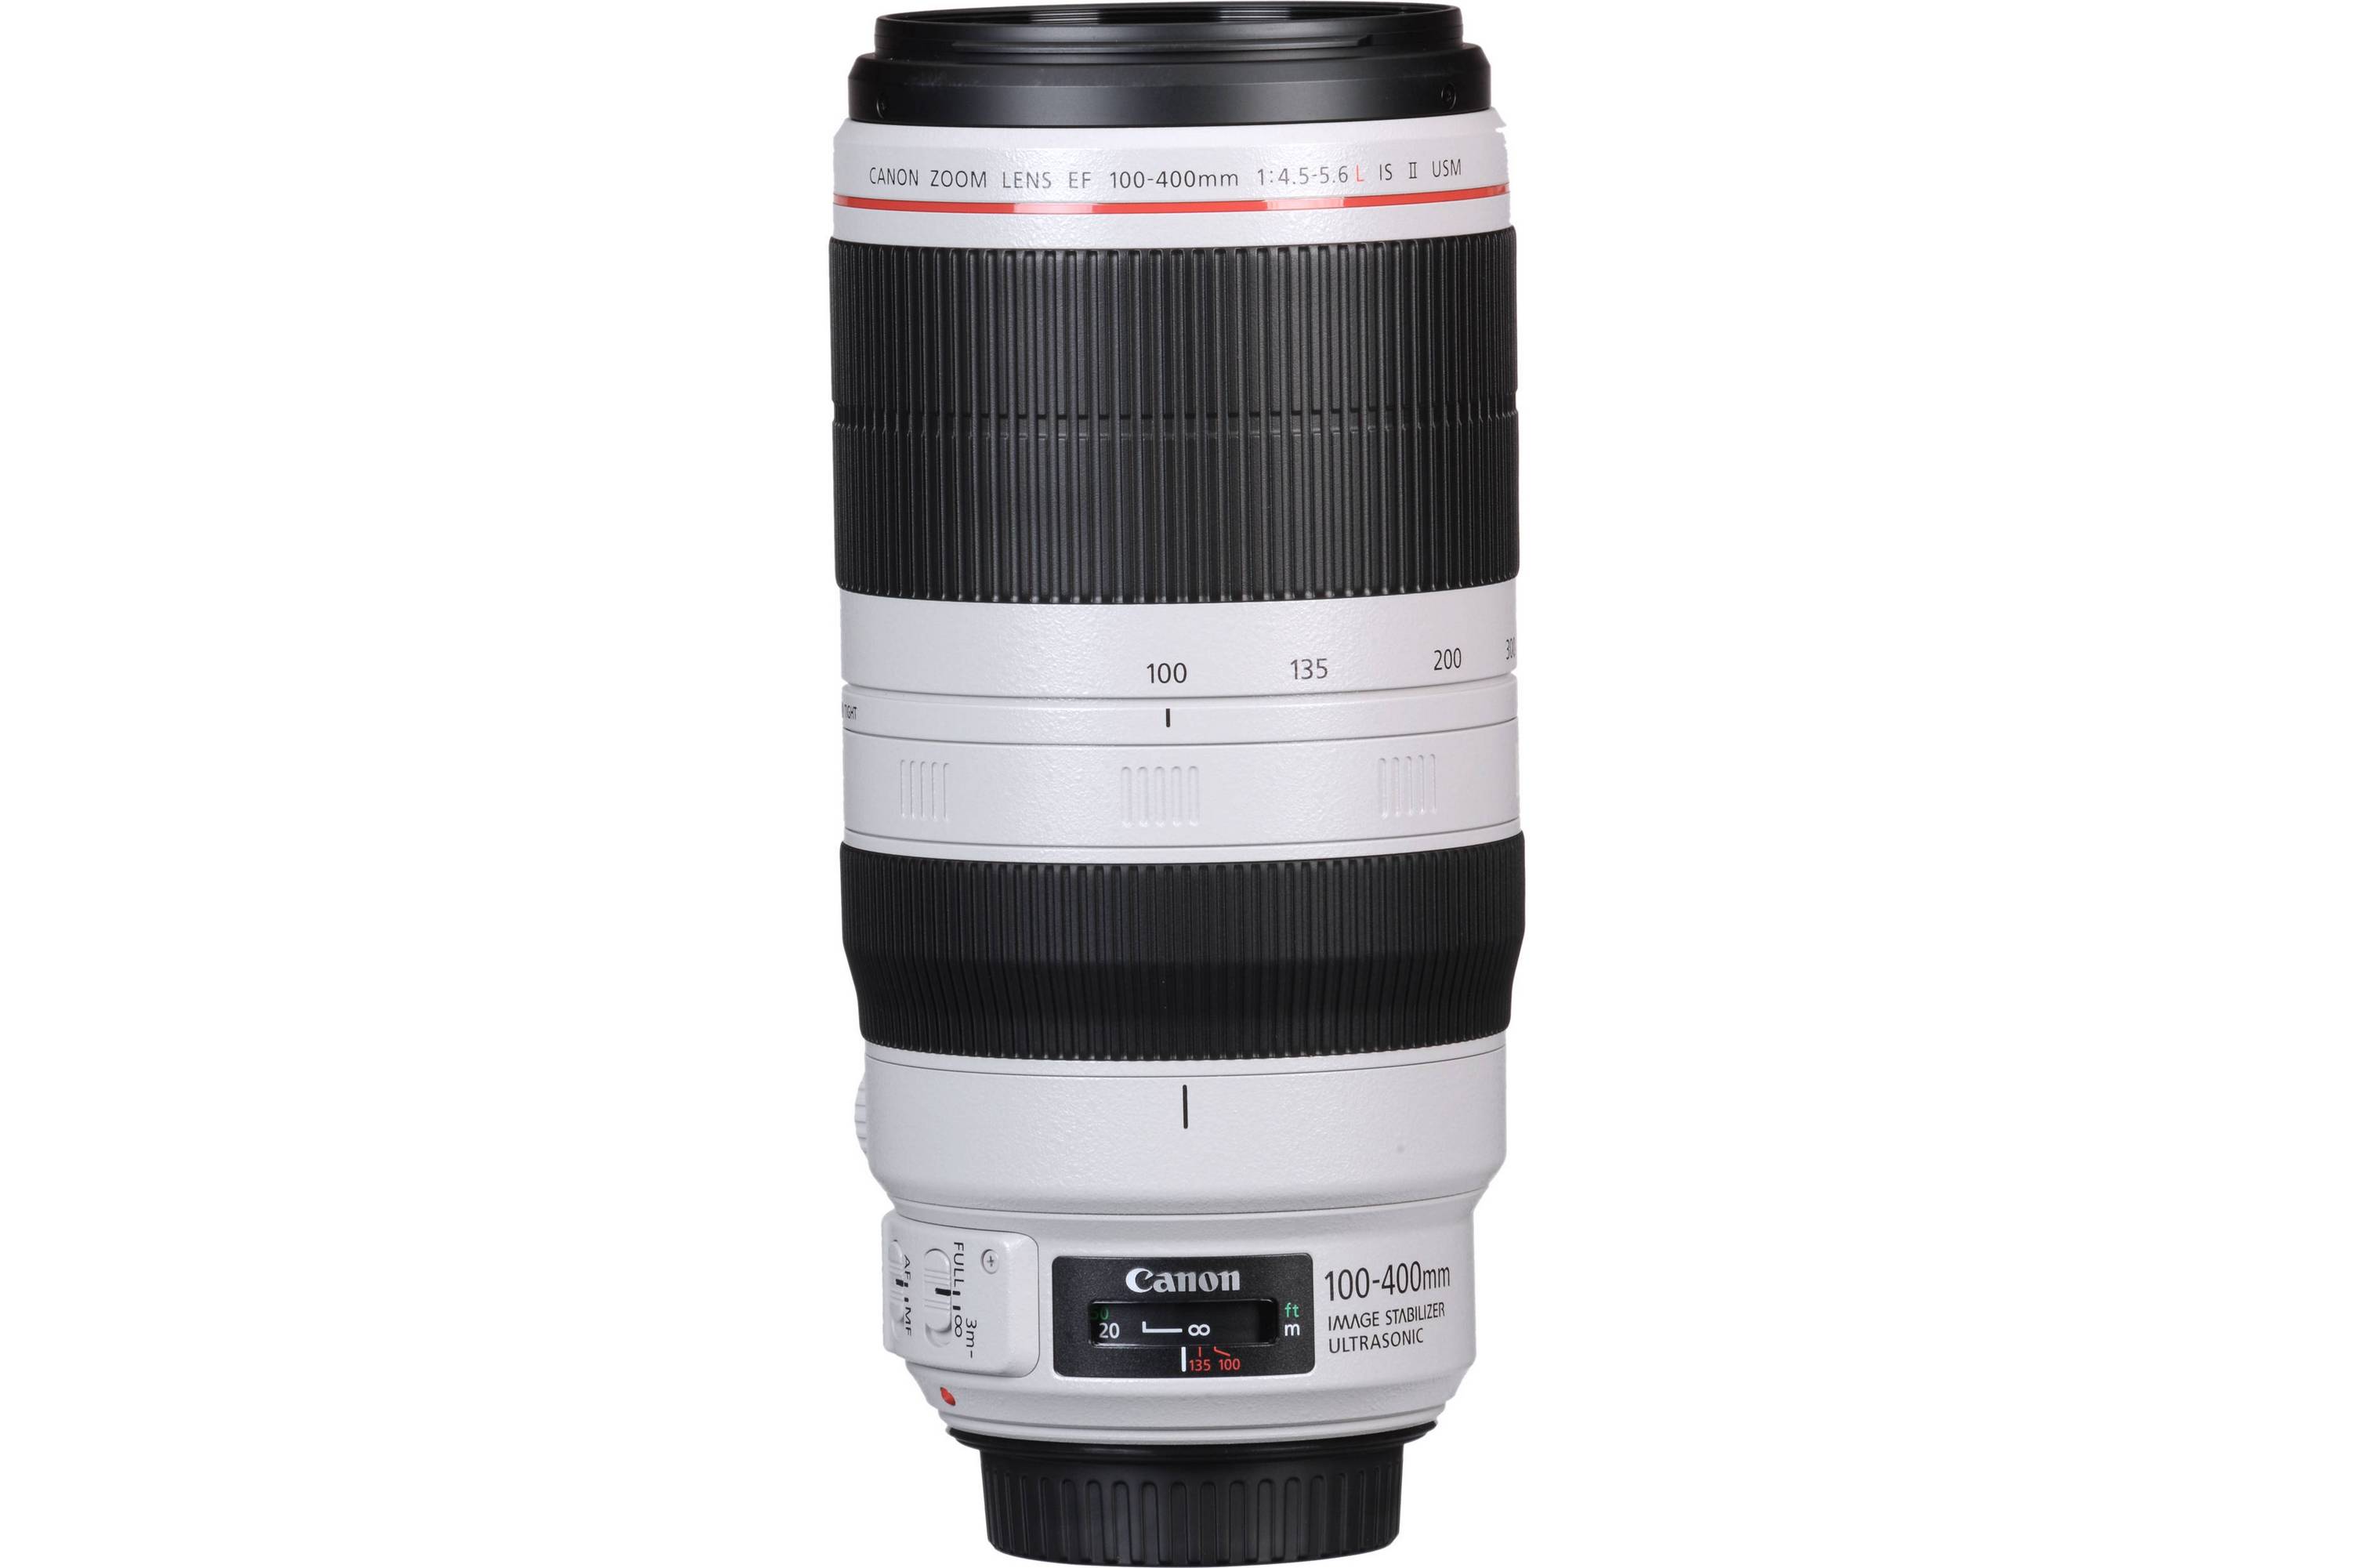  Canon Zoom Lens EF 100-400mm 1:4.5-5.6L IS II USM